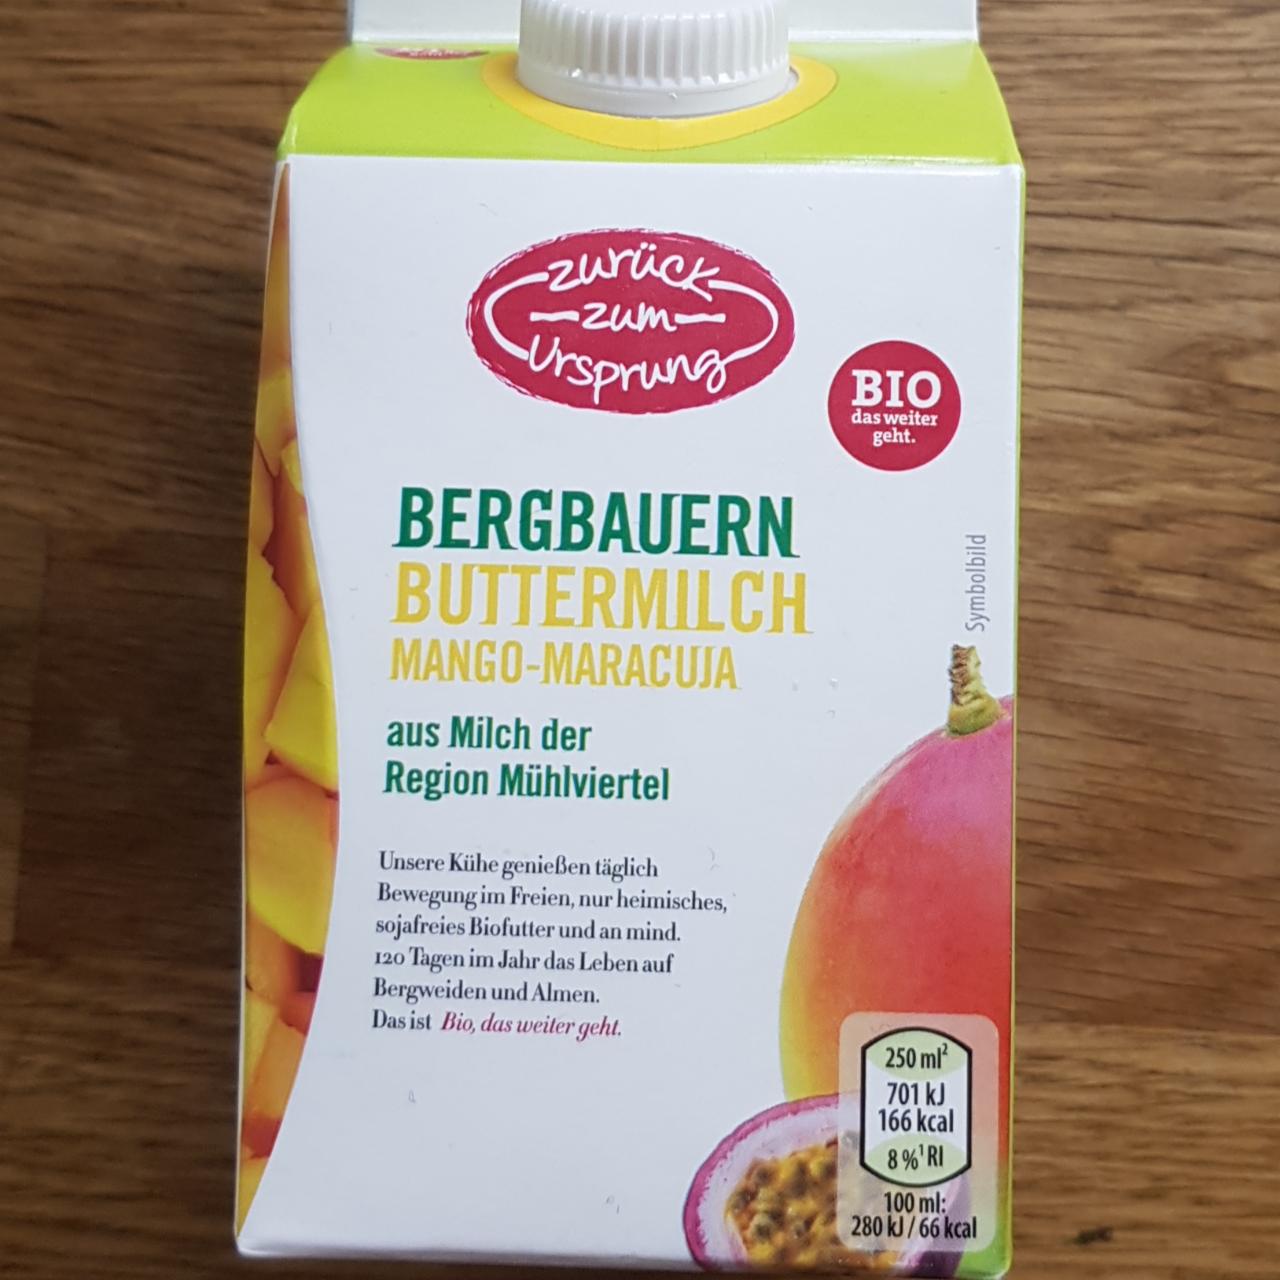 Fotografie - Bergbauern Buttermilch mango maracuja Zuruck zum Ursprung